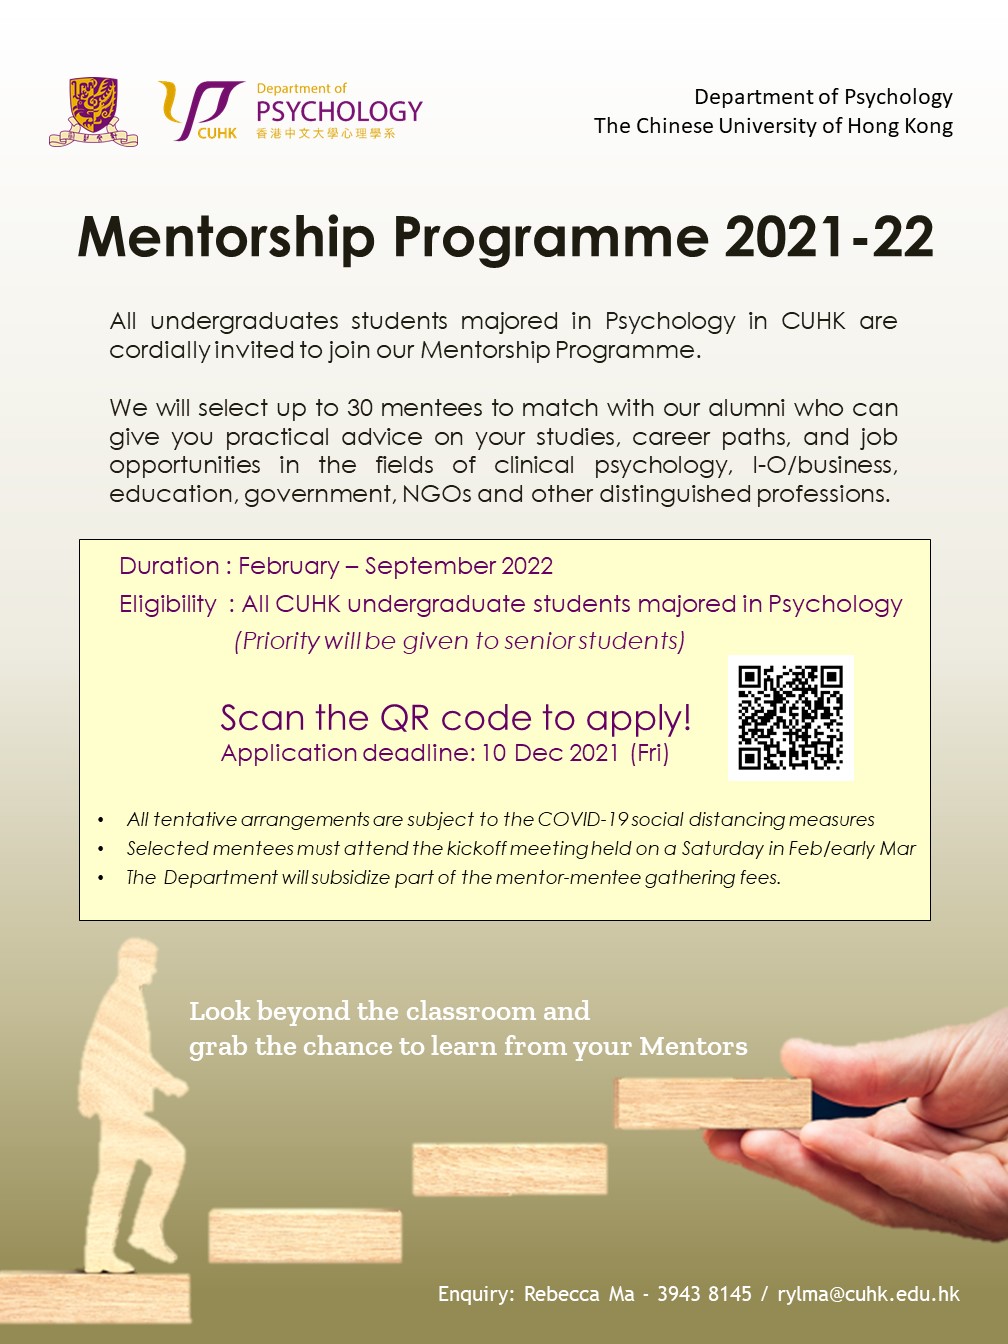 mentorship programme 2021 22 poster